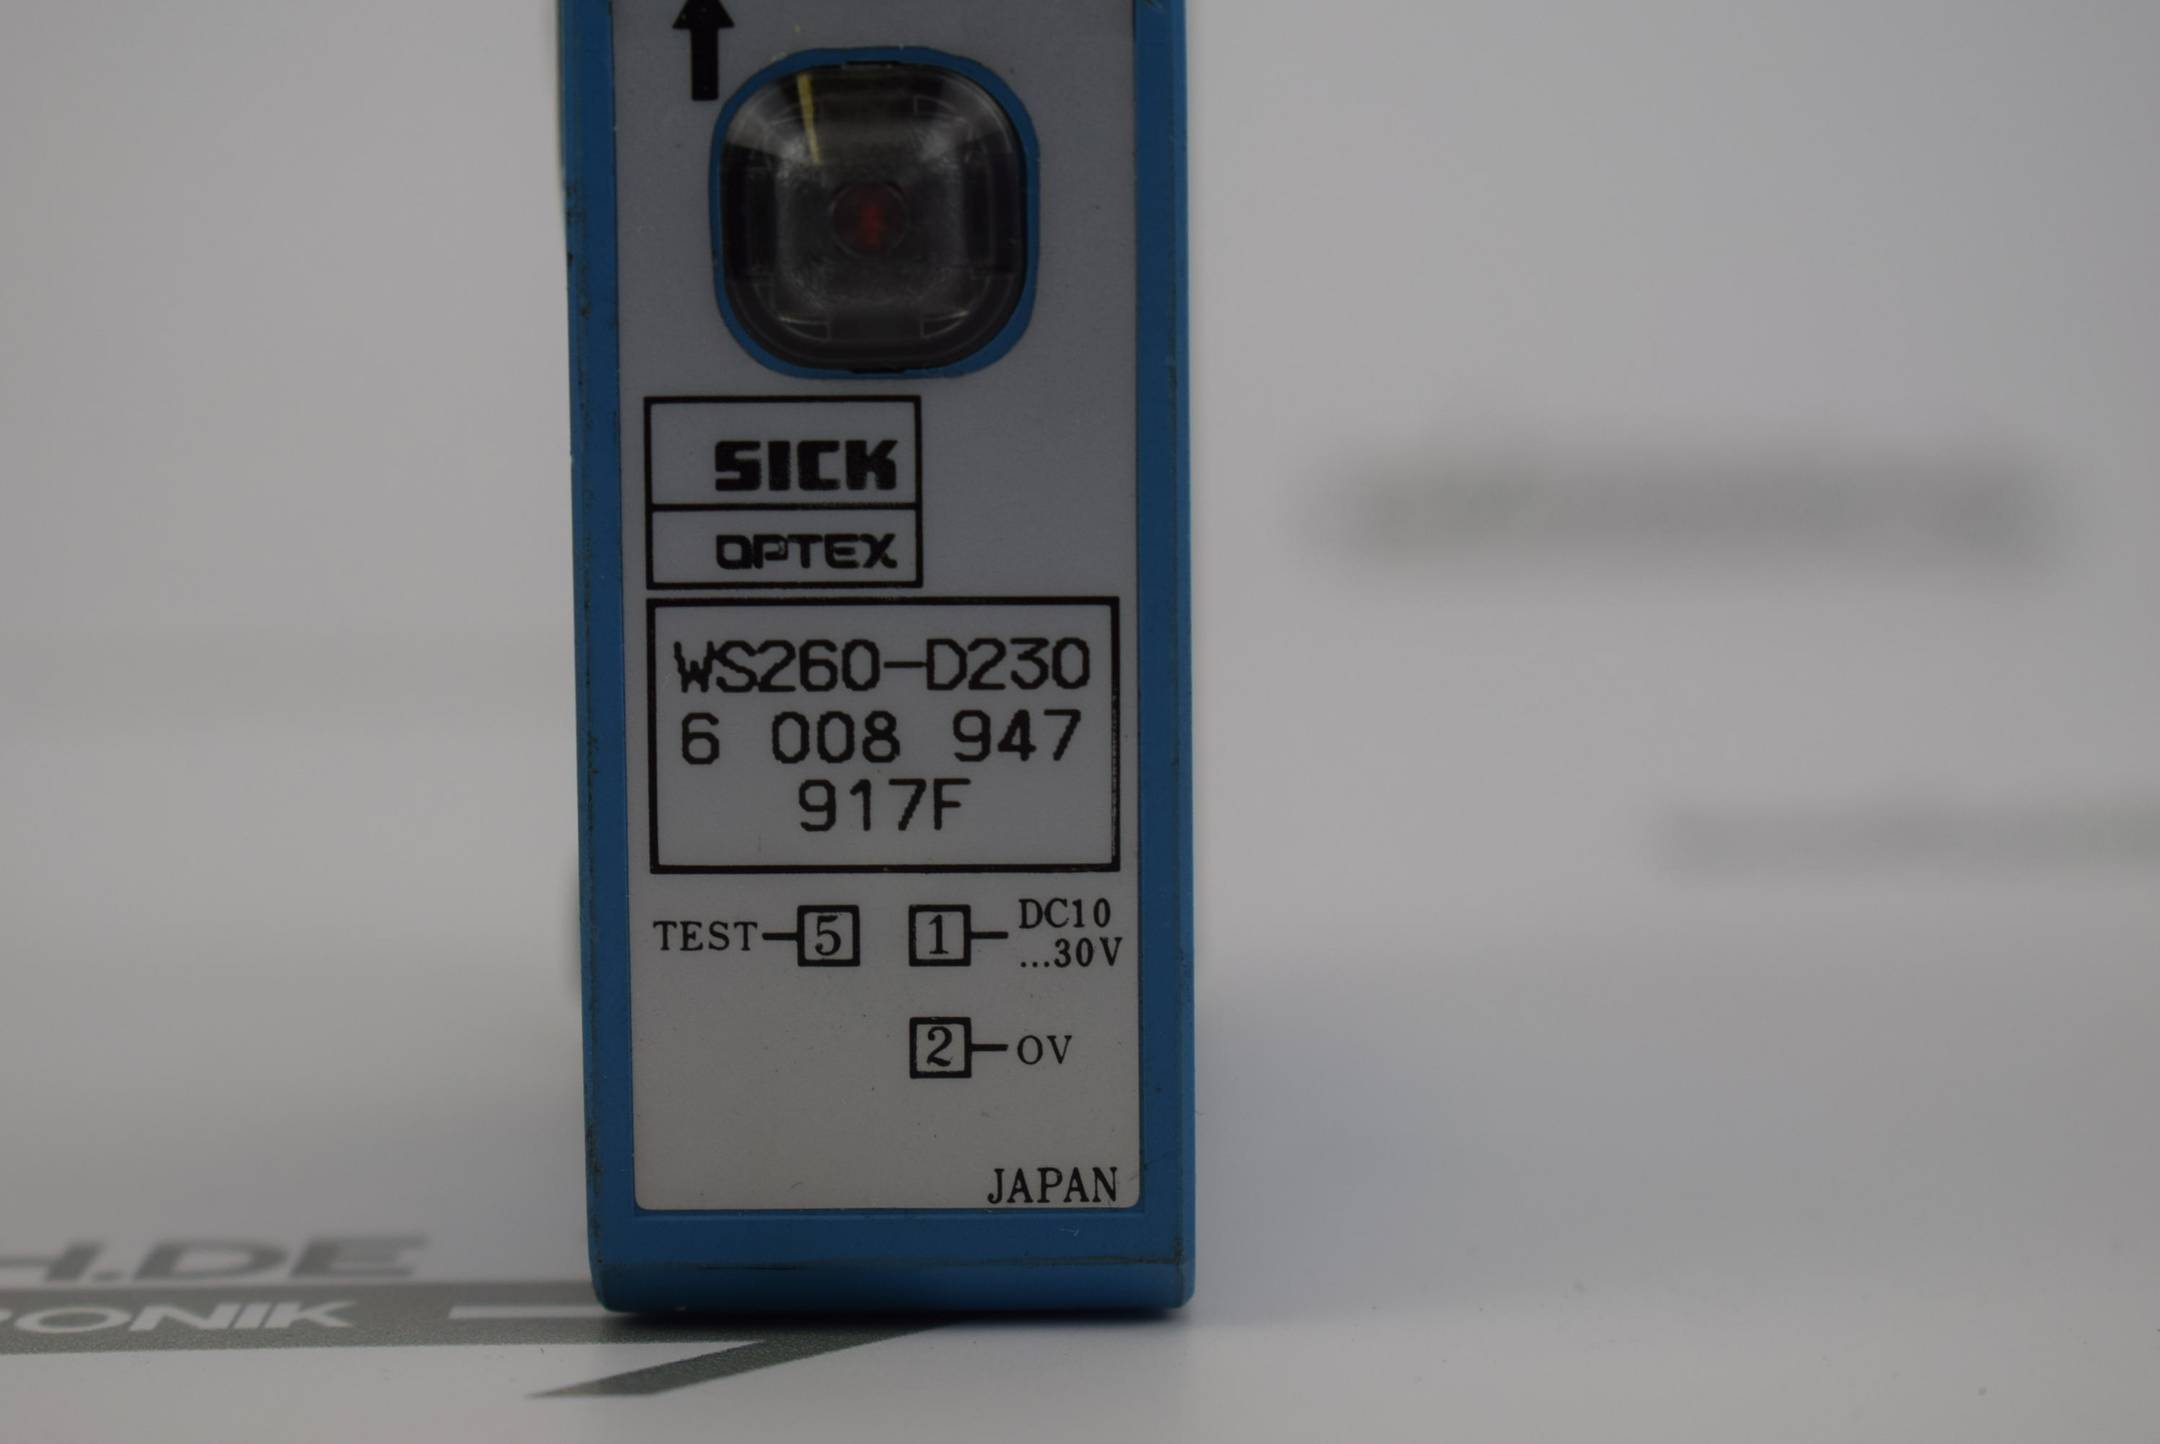 Sick Optex Optischer Sensor Lichtschranke WS260-D230 ( 6 008 947 917F )